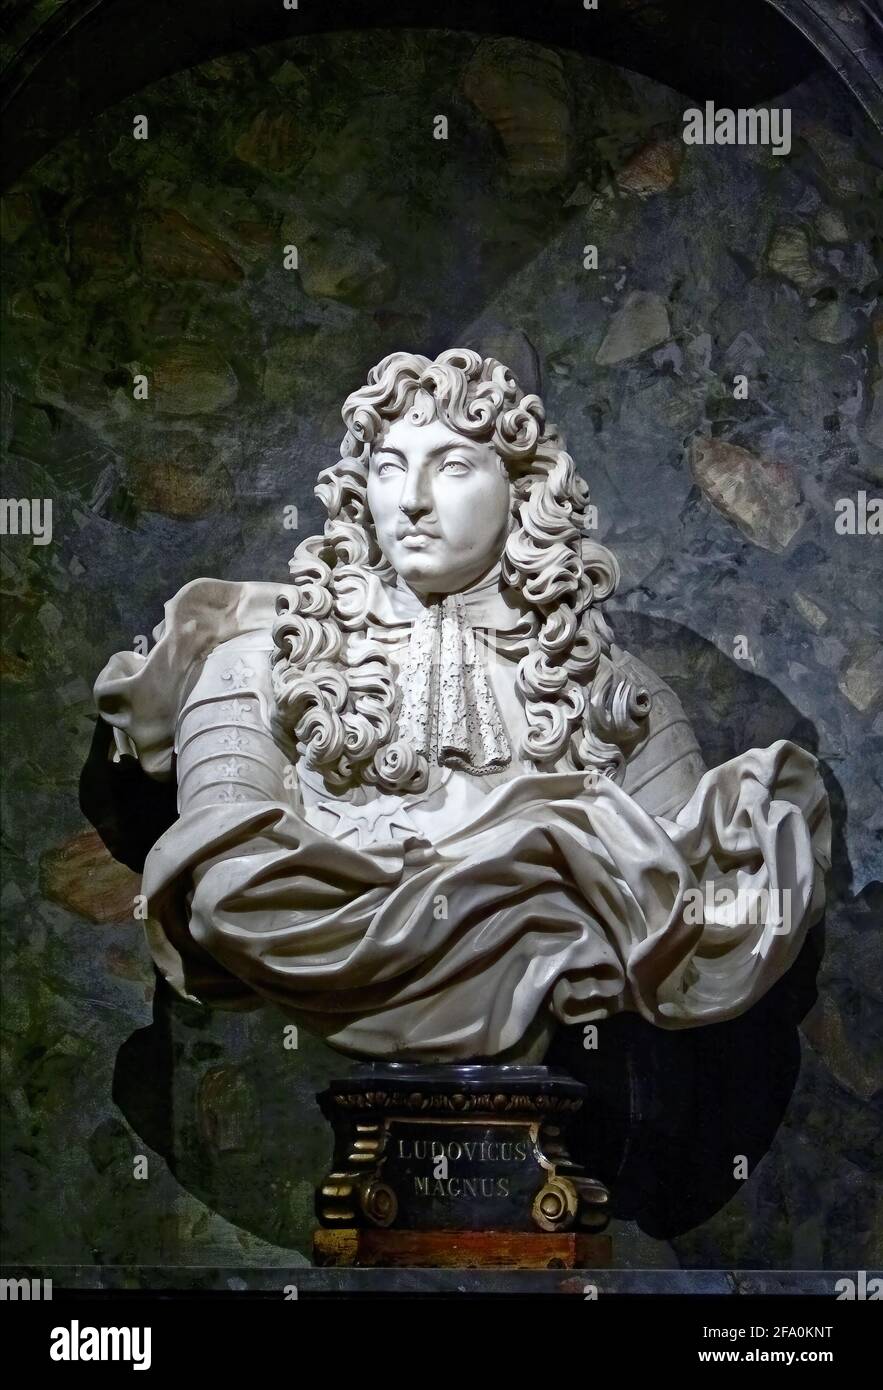 Lo storico busto di marmo del re francese Luigi XIV Foto Stock